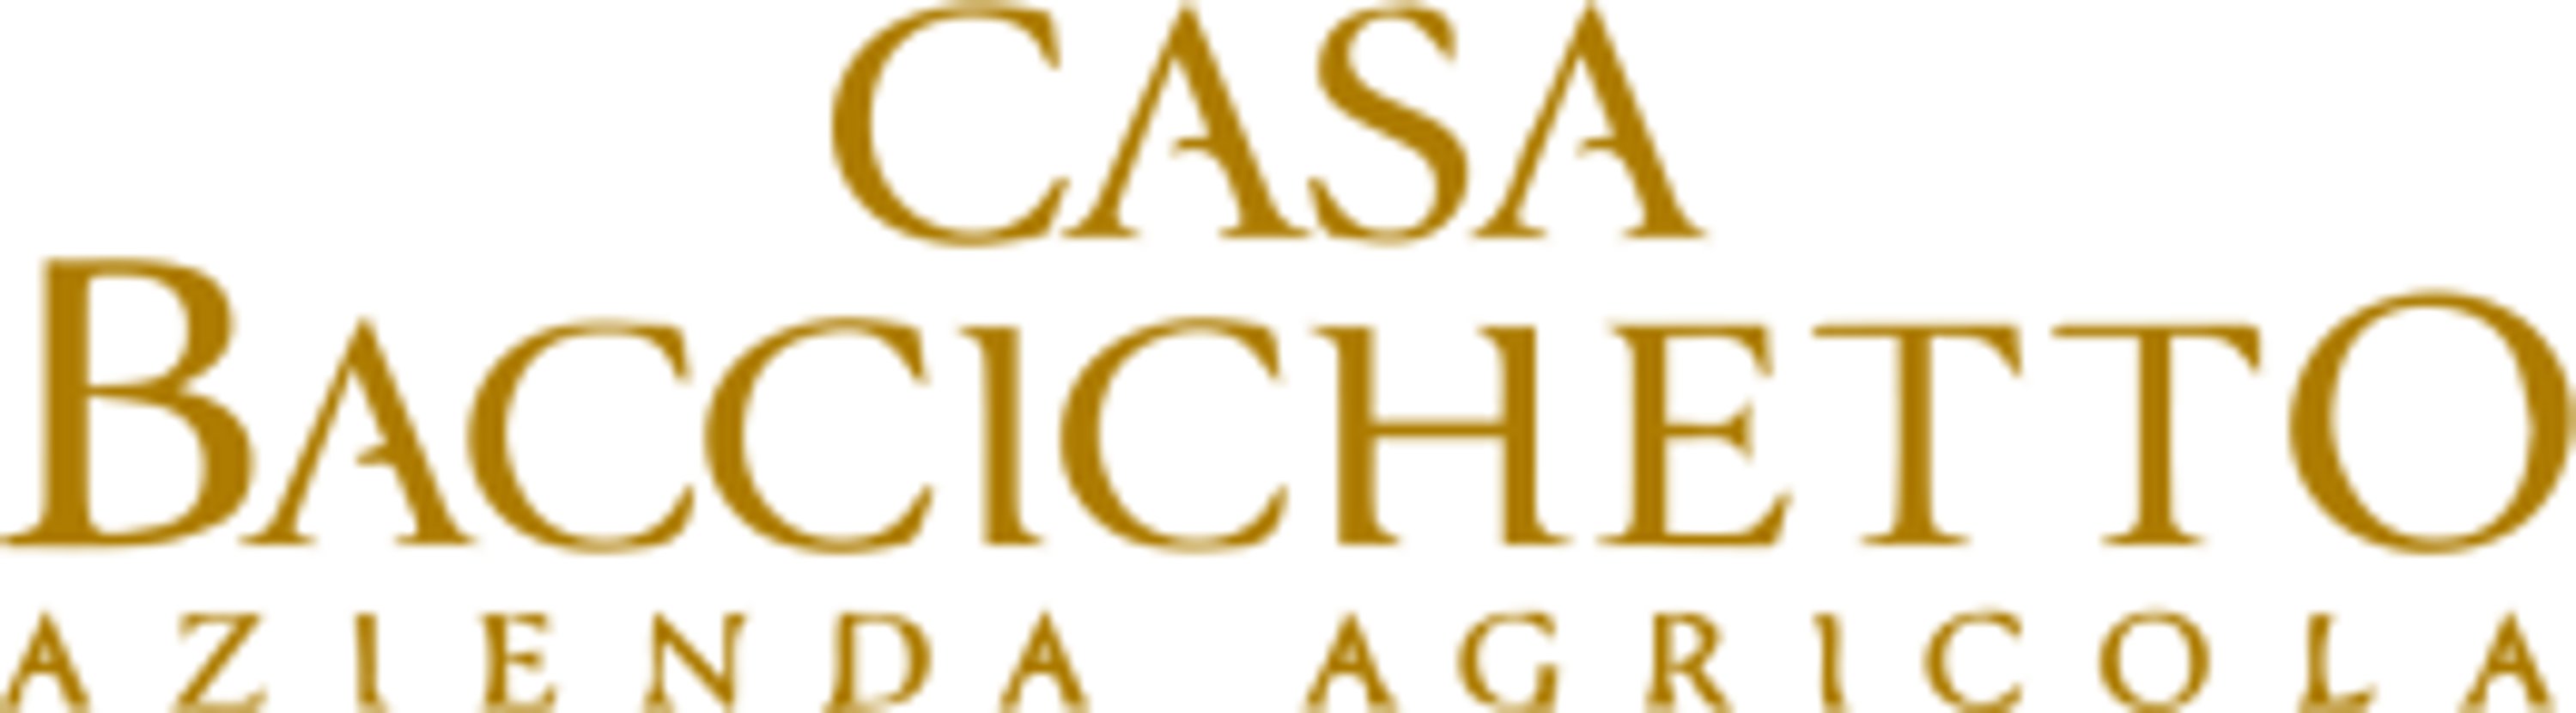 Logo CASA BACCICHETTO AZIENDA AGRICOLAWinzer